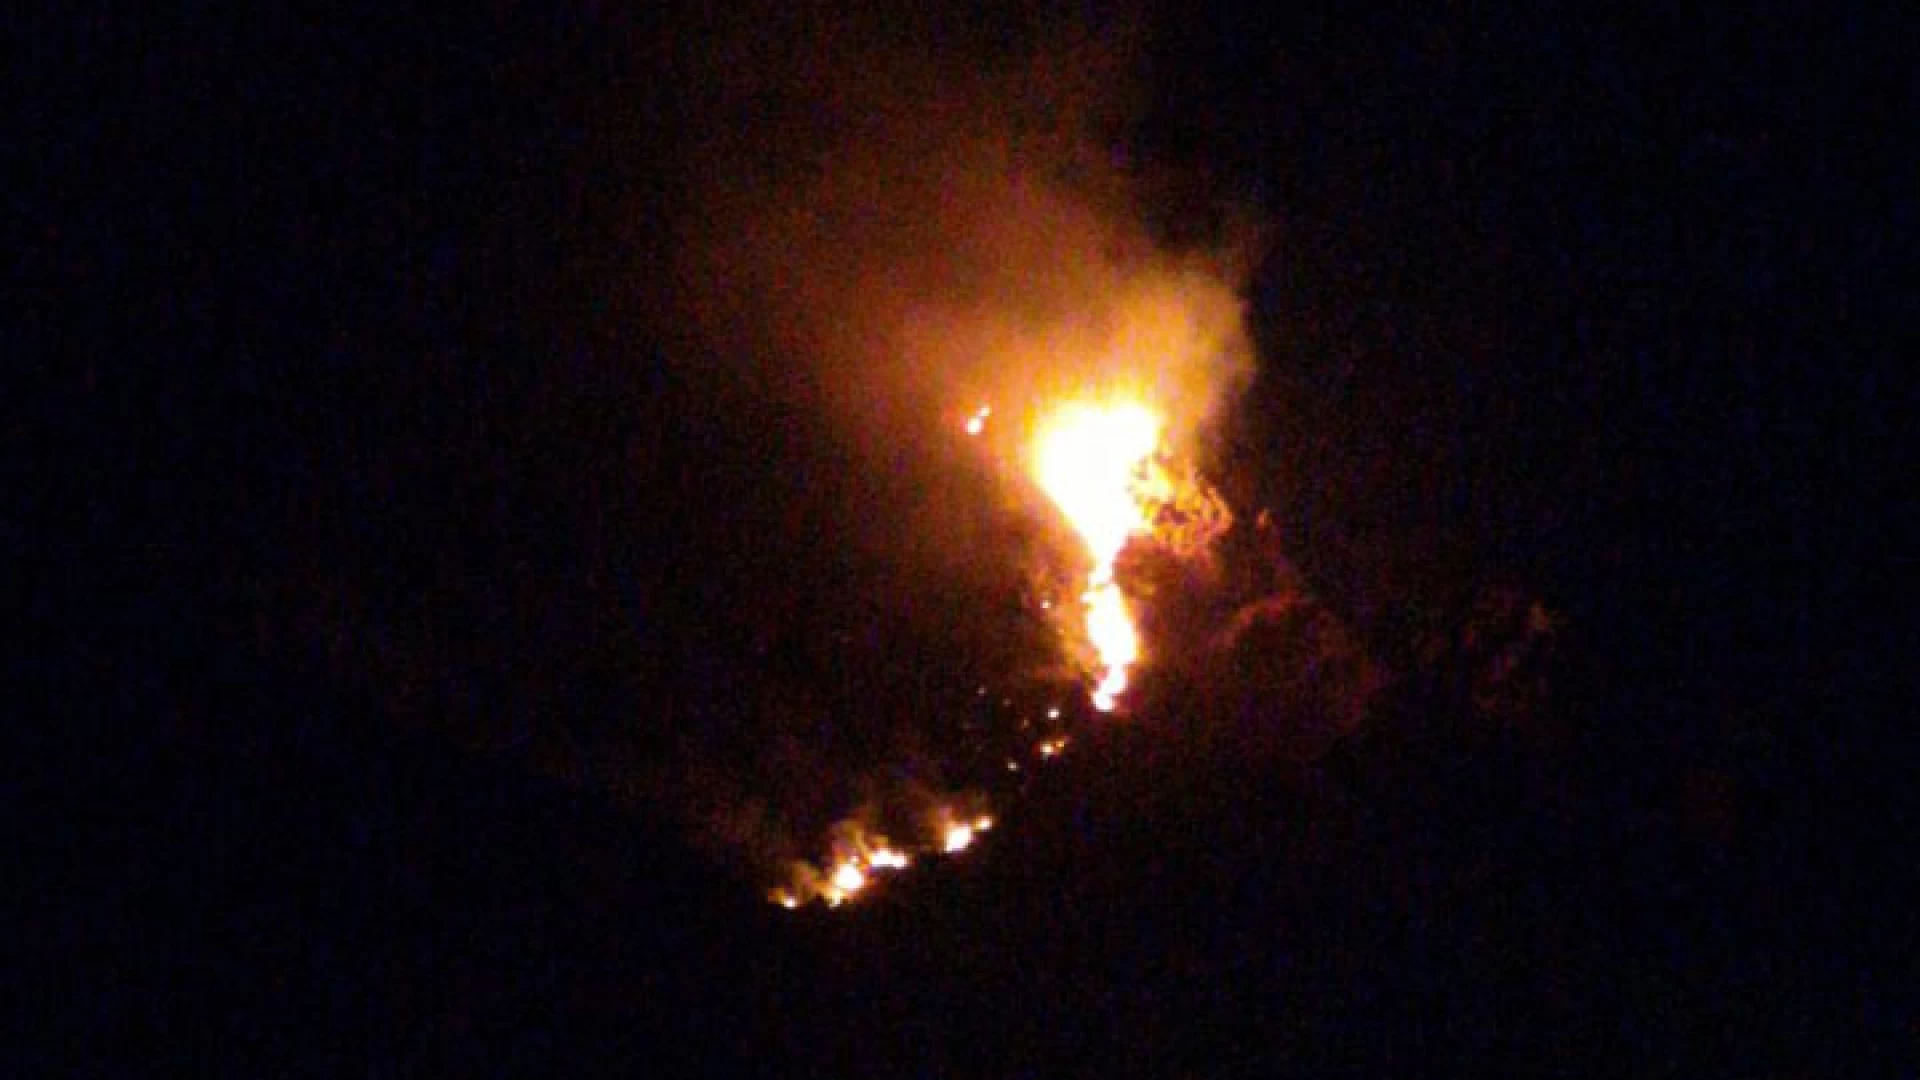 Venafro: il fuoco distrugge Monte Corno nella notte. In fiamme ettari di bosco ed uliveti. Situazione difficile. Le fiamme hanno illuminato la piana di Venafro per tutta la notte.